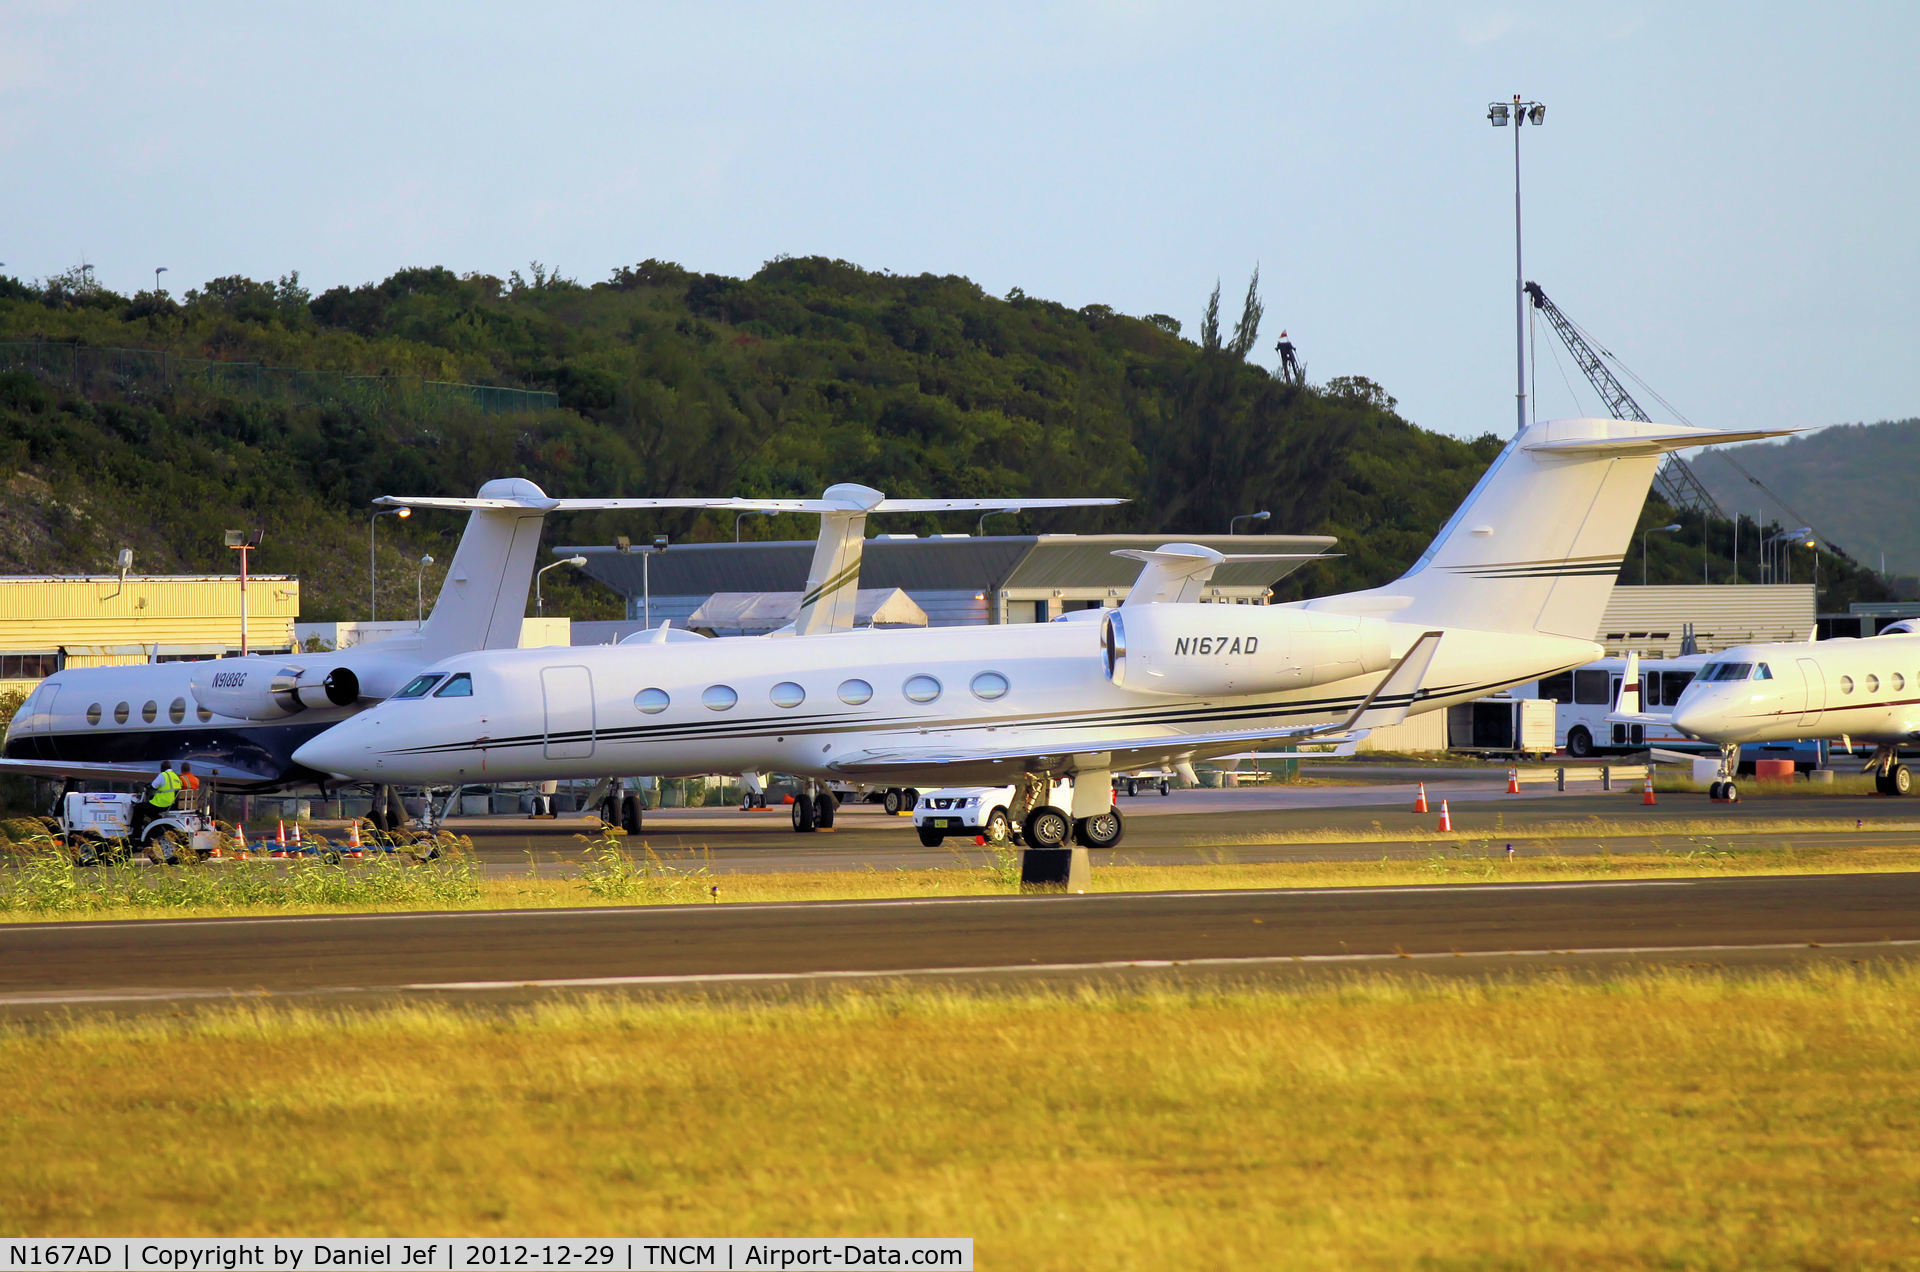 N167AD, 2010 Gulfstream Aerospace GIV-X (G450) C/N 4197, N167AD